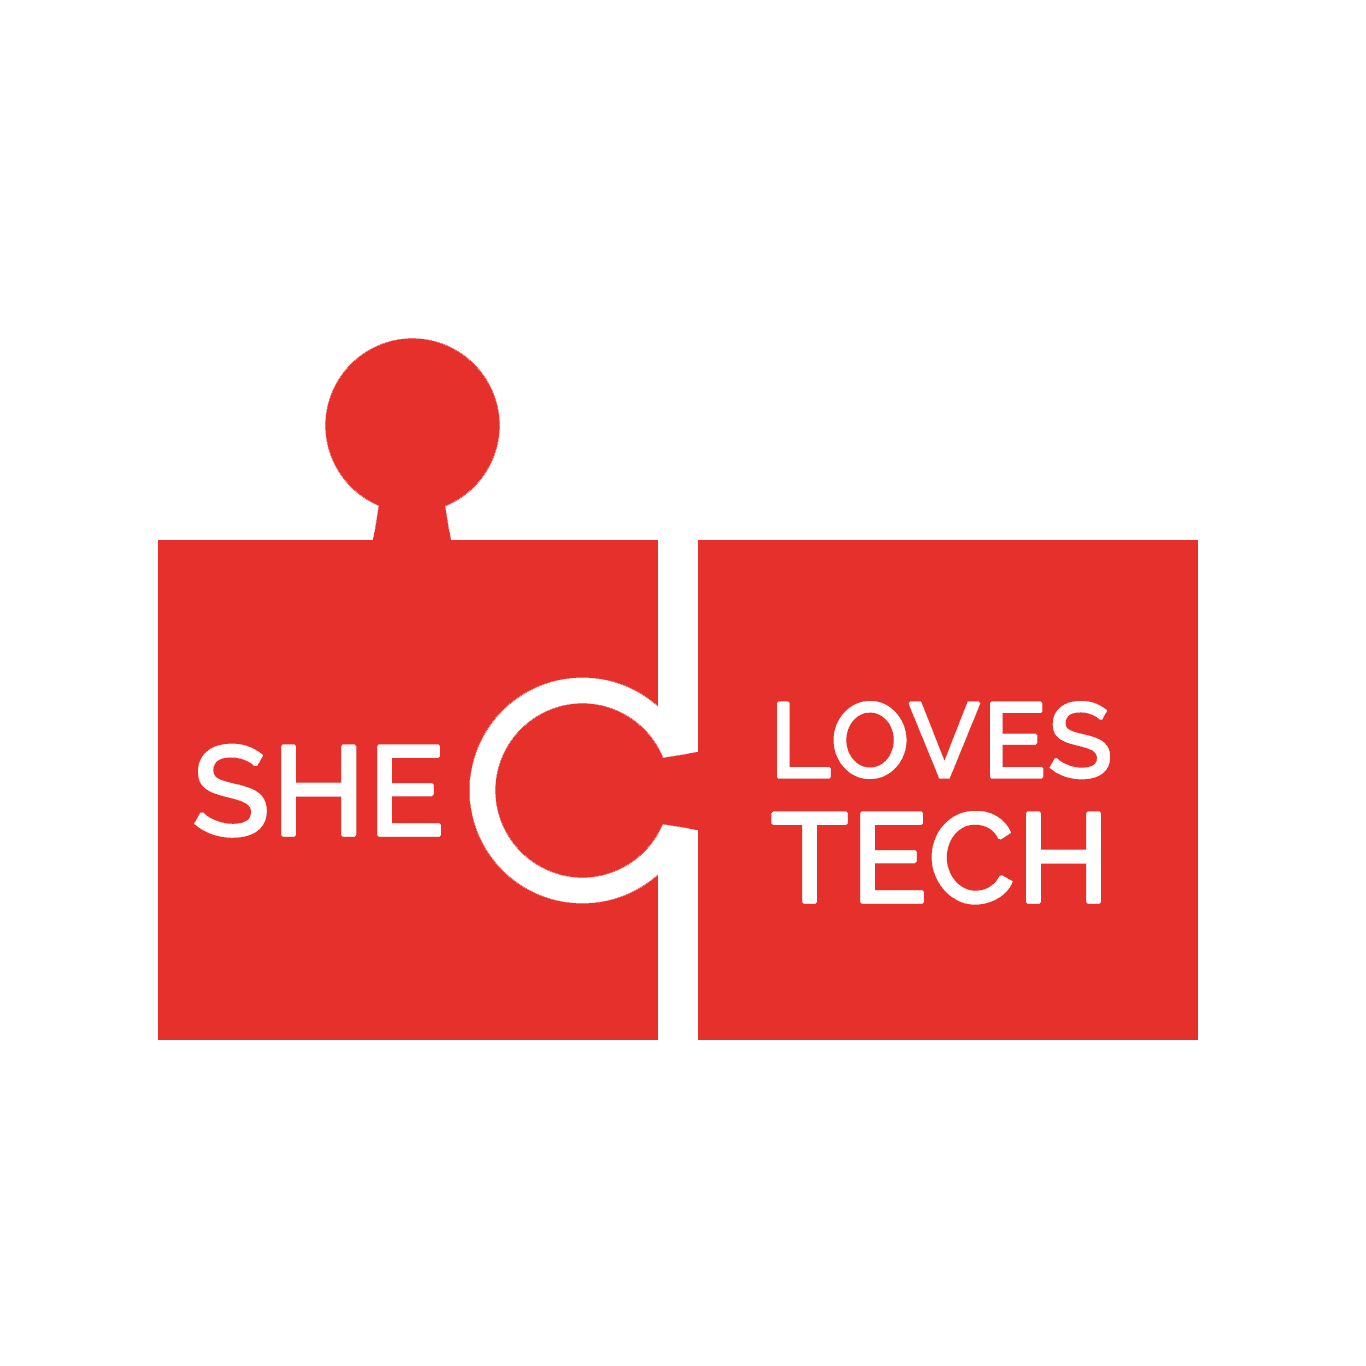 She Loves Tech logo